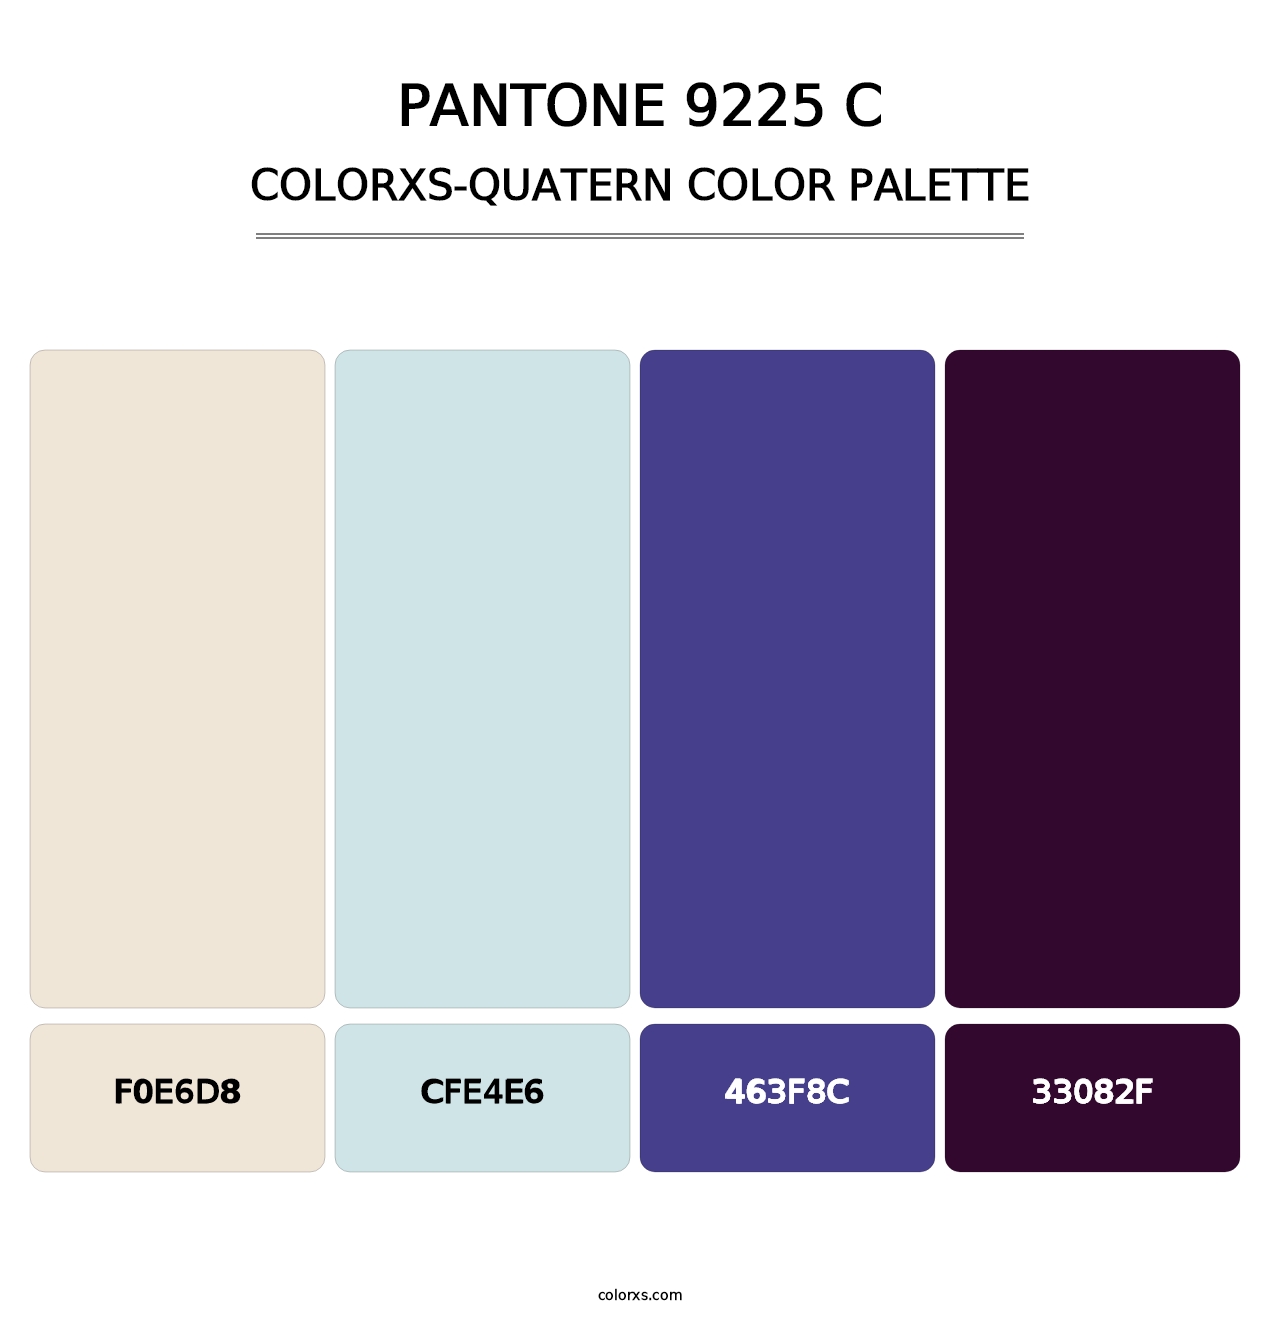 PANTONE 9225 C - Colorxs Quatern Palette